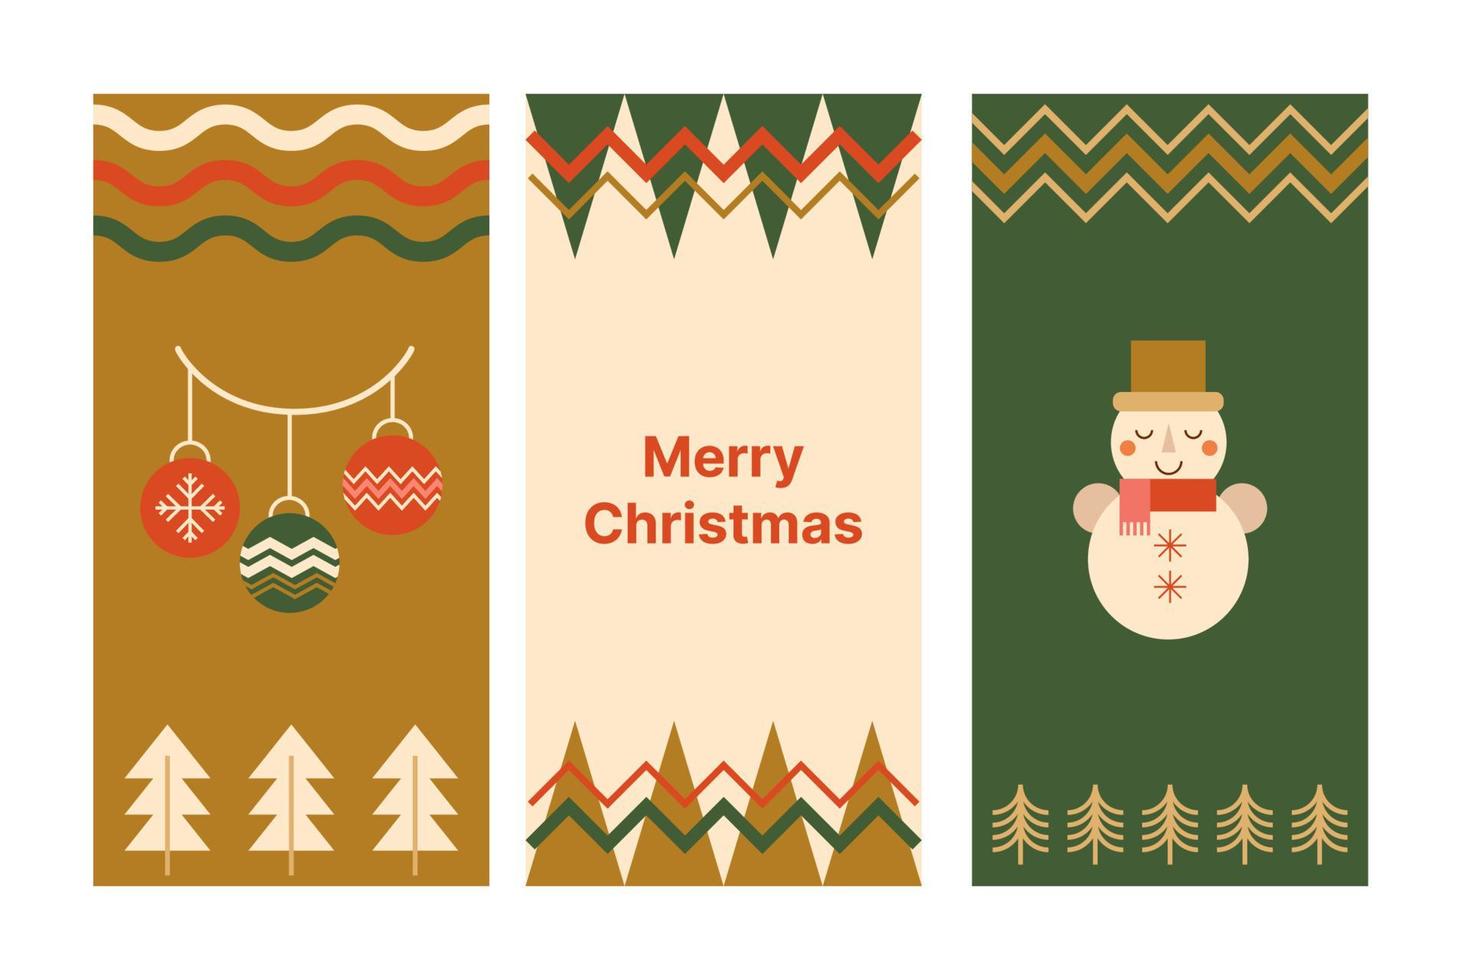 juego de afiches de navidad geométricos hechos de símbolos geométricos simples de bola de navidad de mosaico, muñeco de nieve, árbol de navidad, adorno de zig zag. fondo geométrico rojo, verde y dorado. ilustración vectorial vector